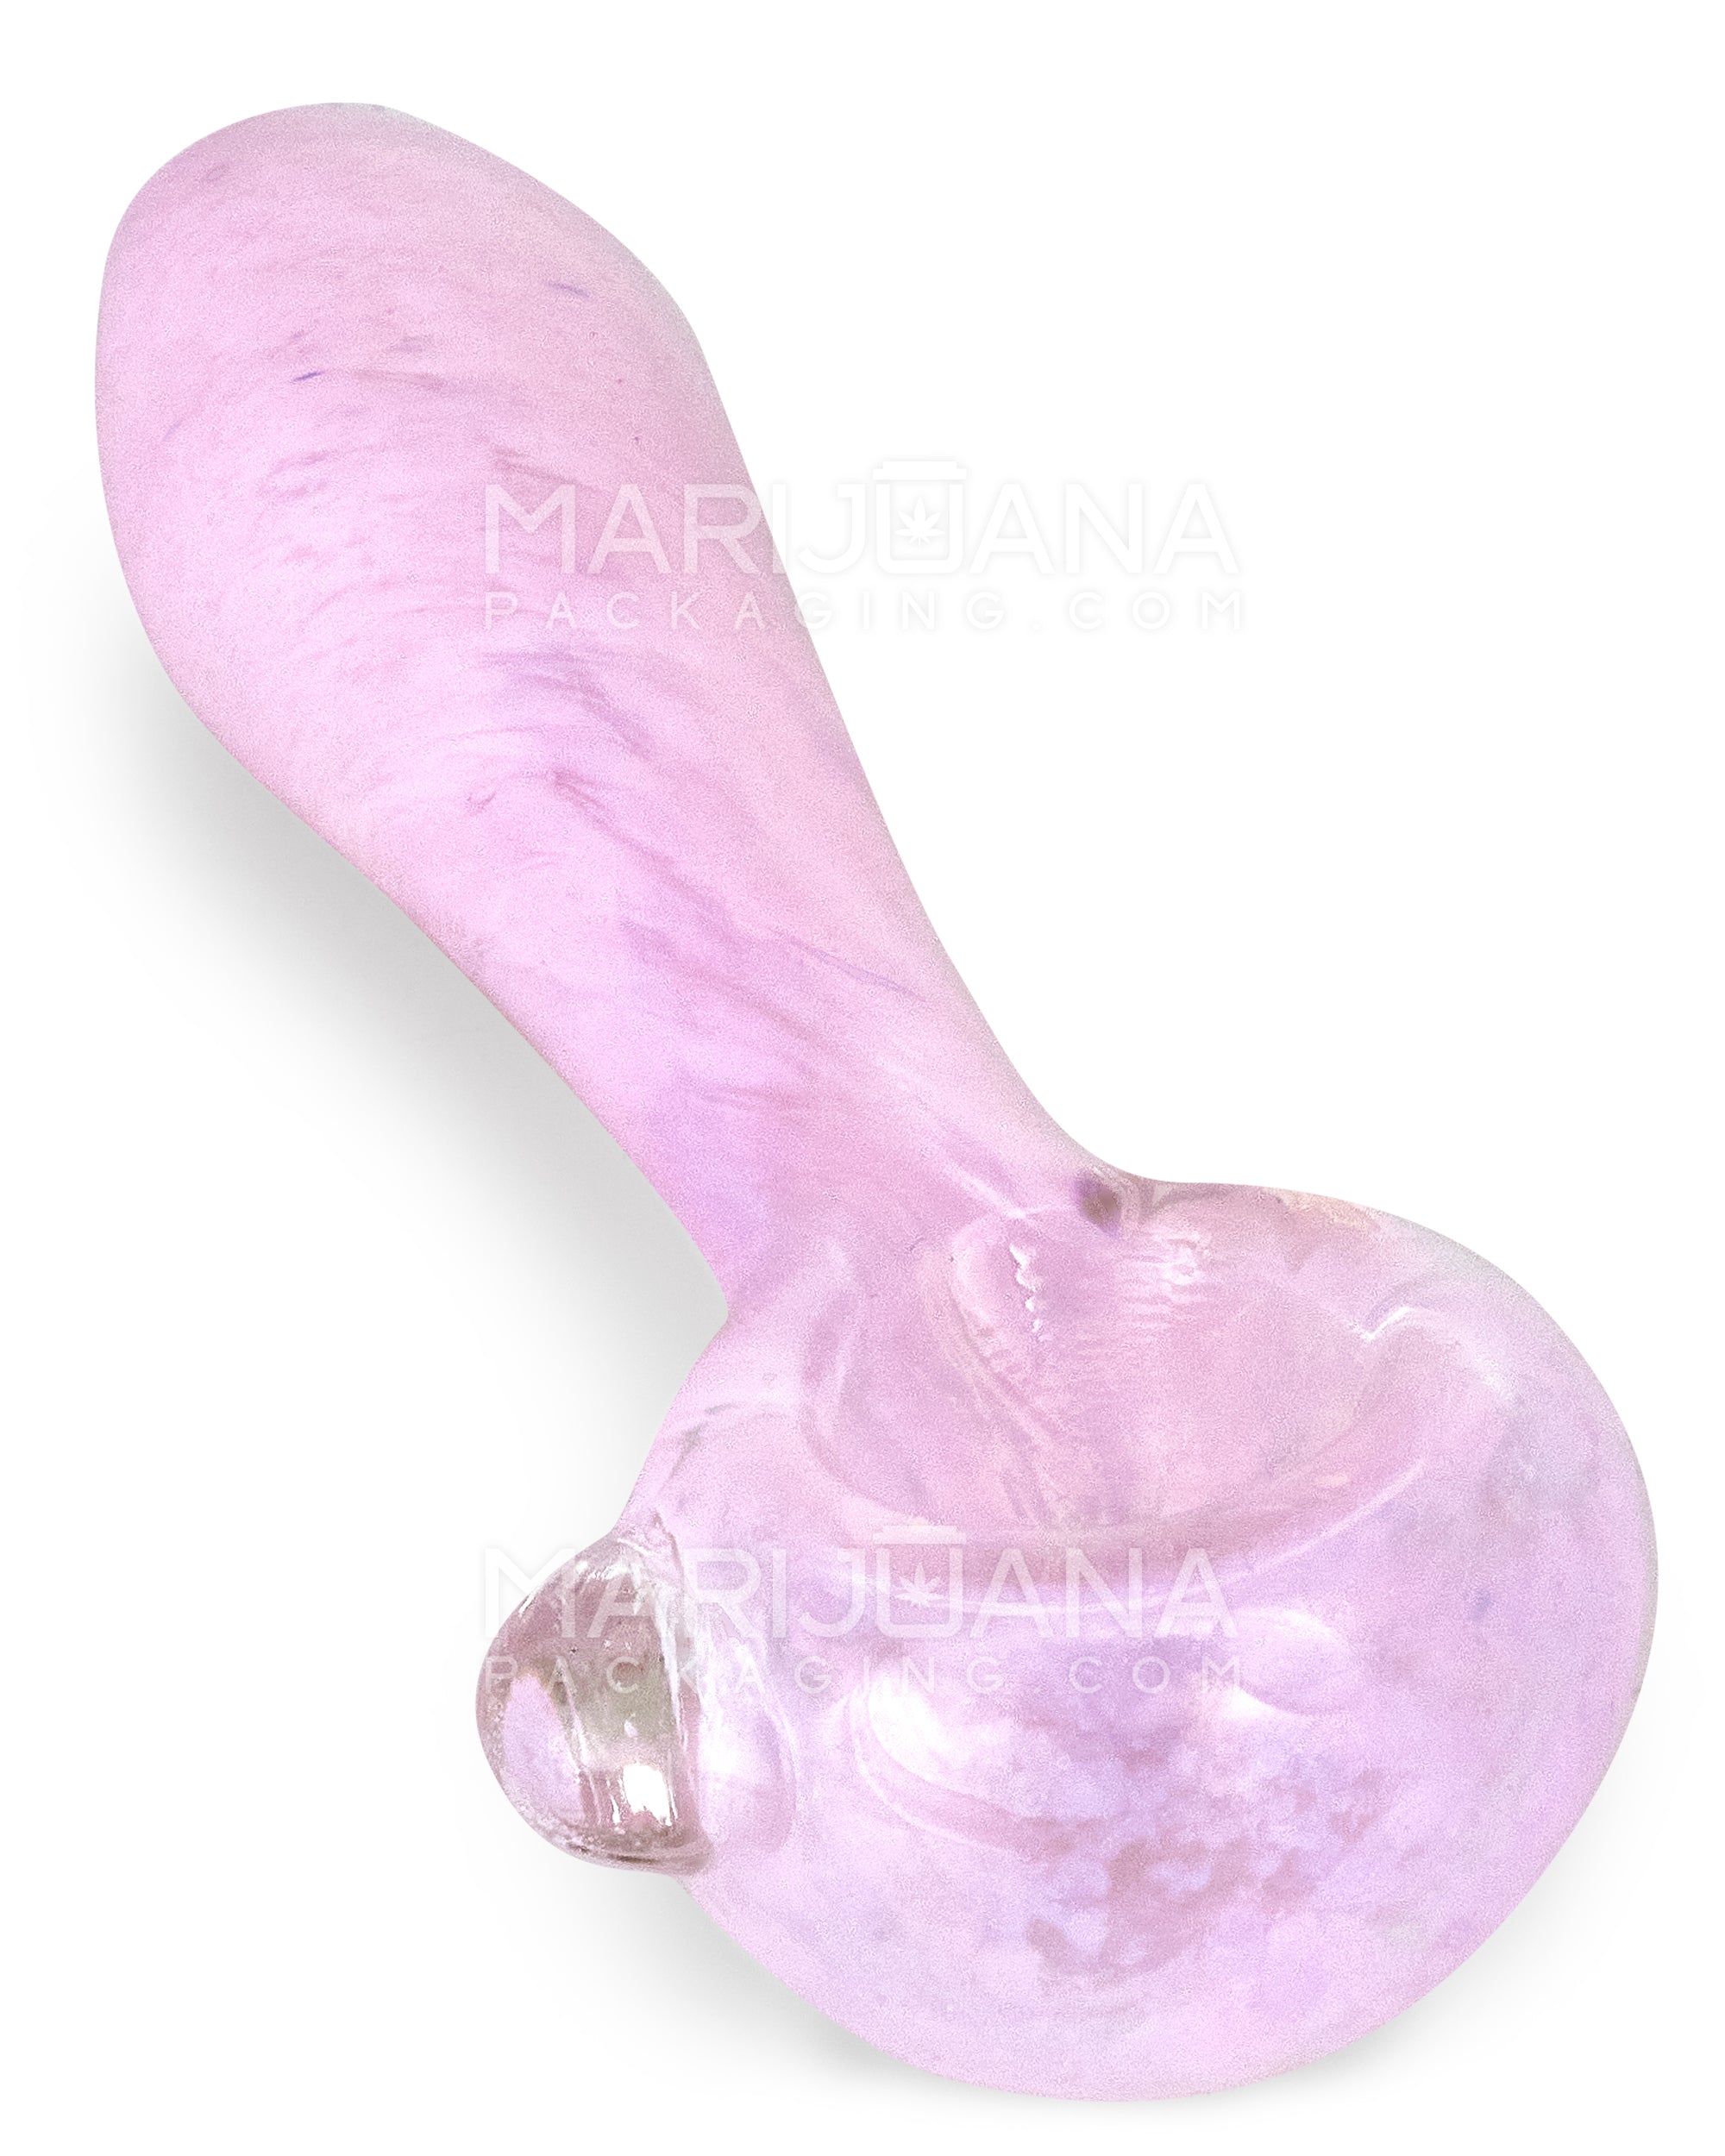 Frit Spoon Hand Pipe w/ Knocker | 4in Long - Glass - Milky Pink - 1